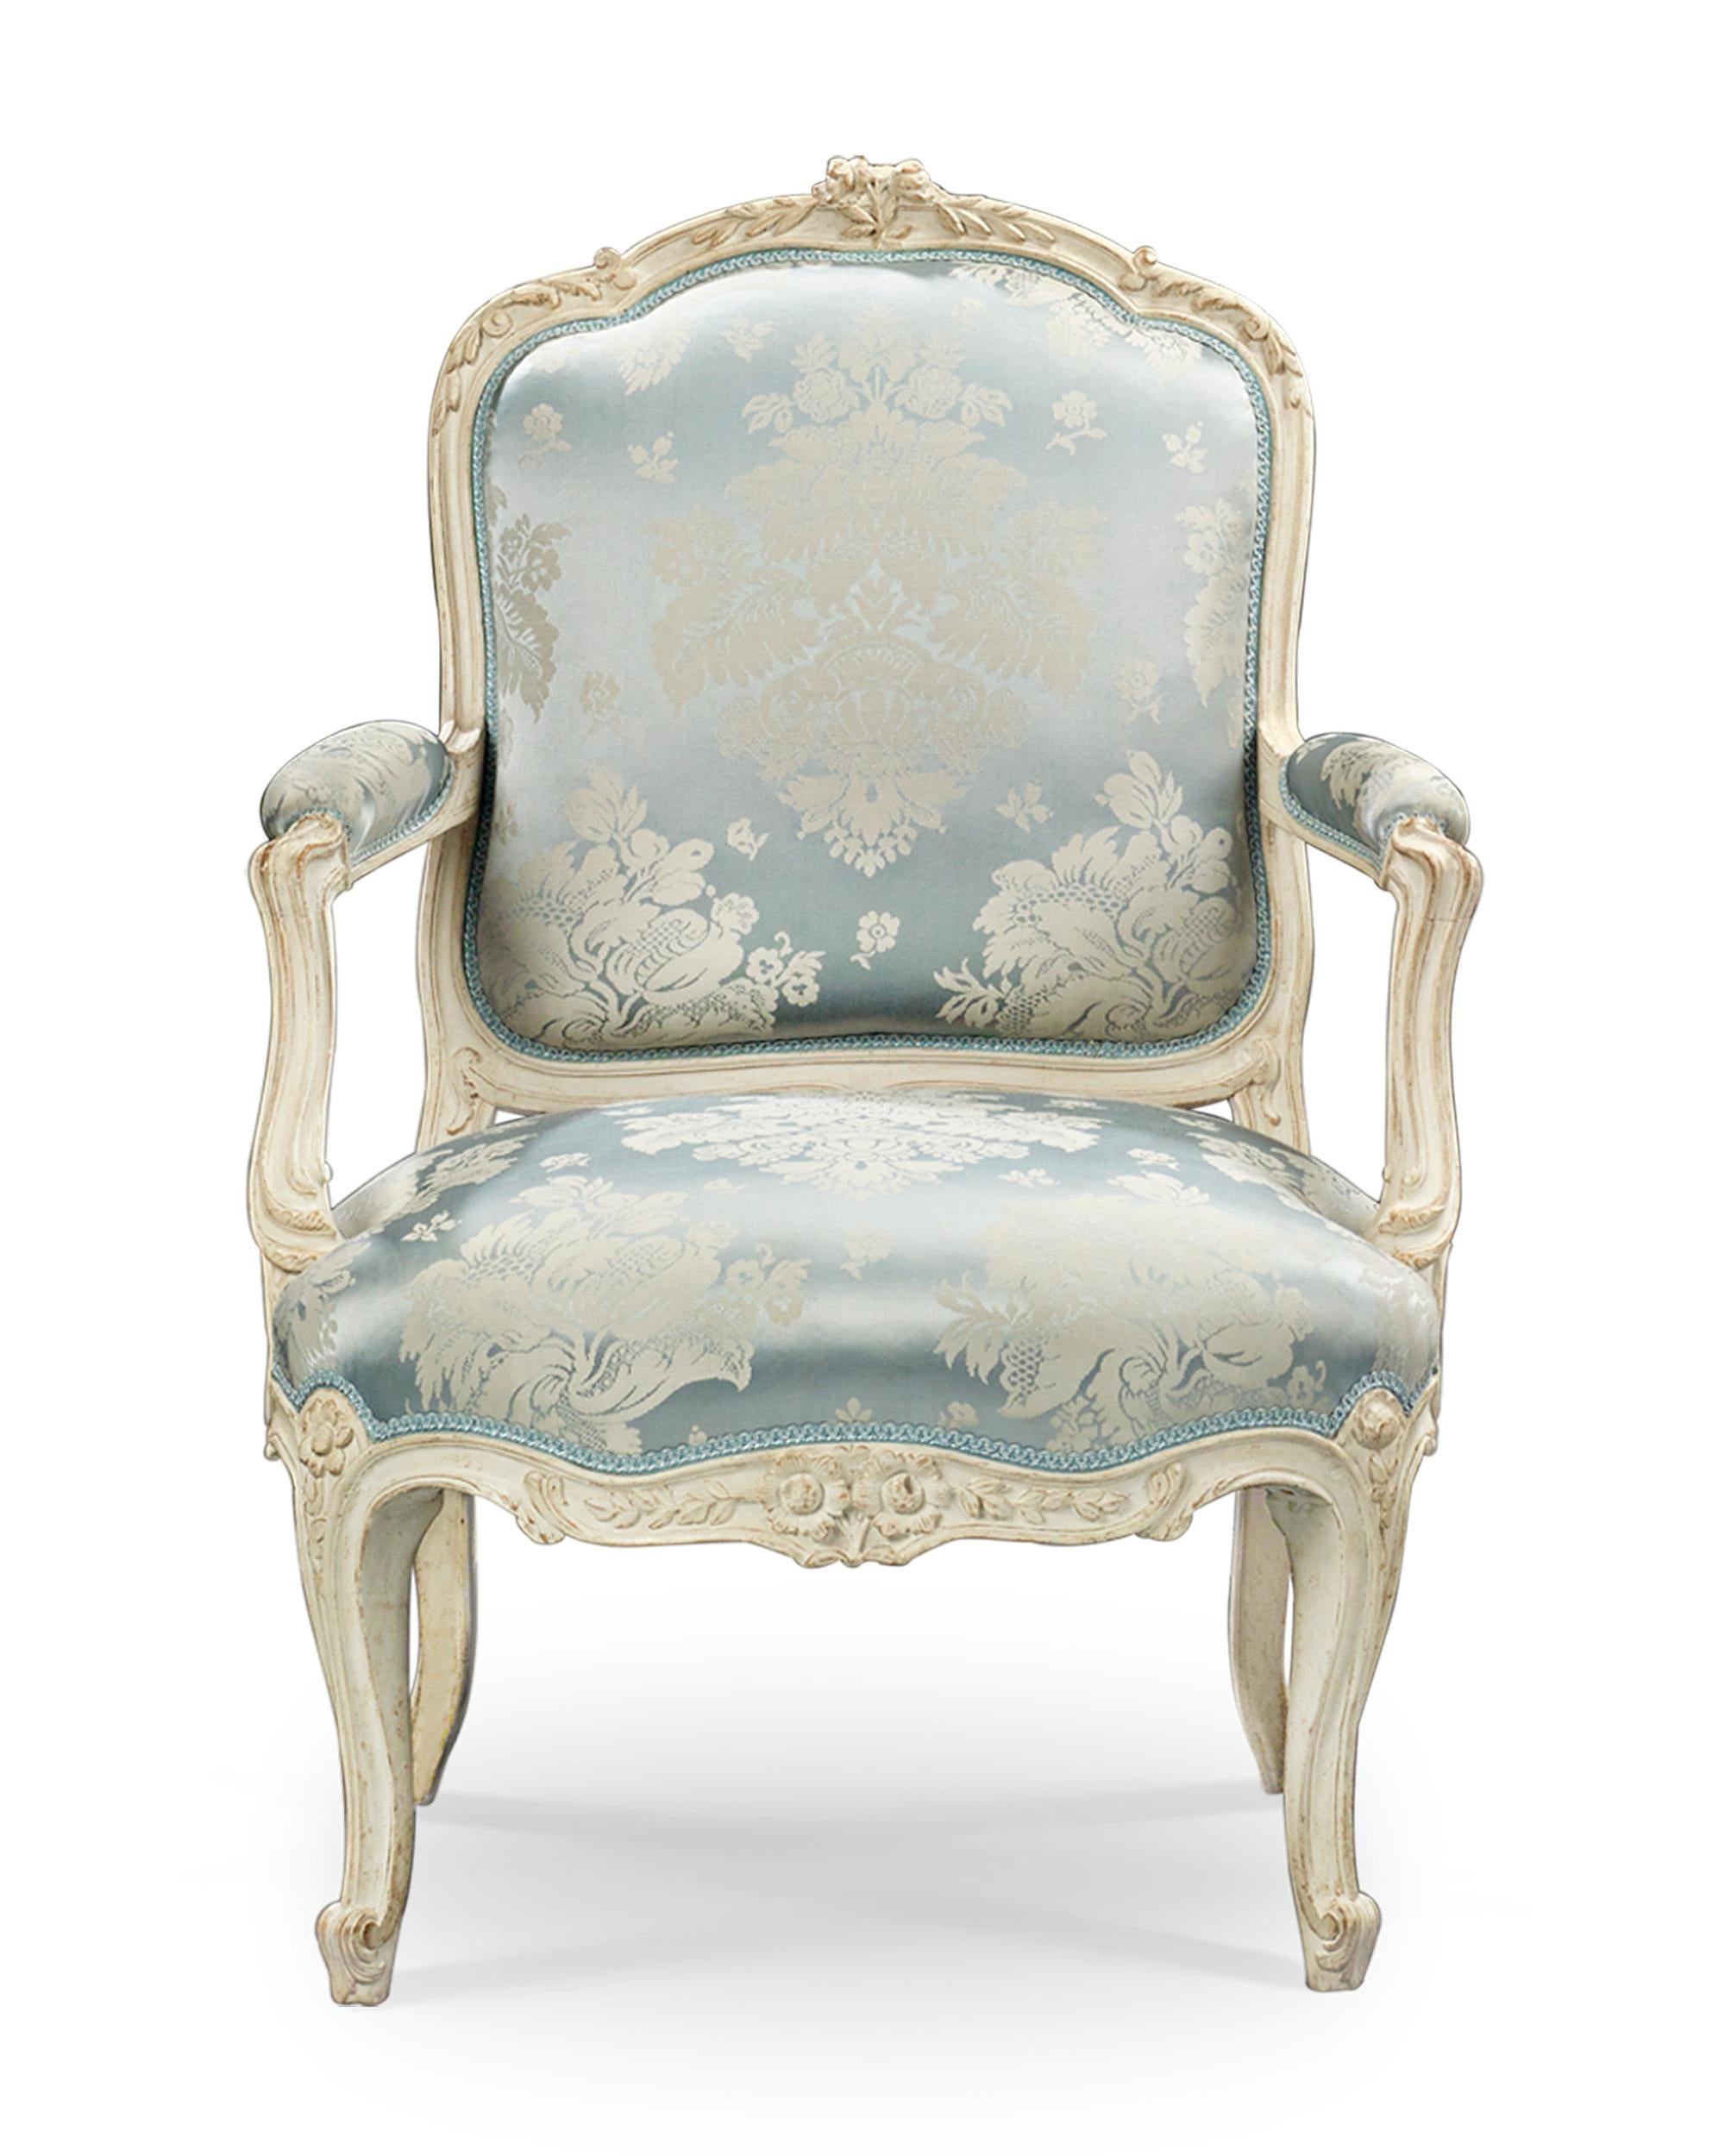 Cette impressionnante paire de fauteuils français témoigne de la splendeur et de l'élégance de la période Louis XV. Fabriquées par le célèbre ébéniste Jean-René Famed l'Ainé (1733-1783), les chaises sont délicieusement construites avec des lignes